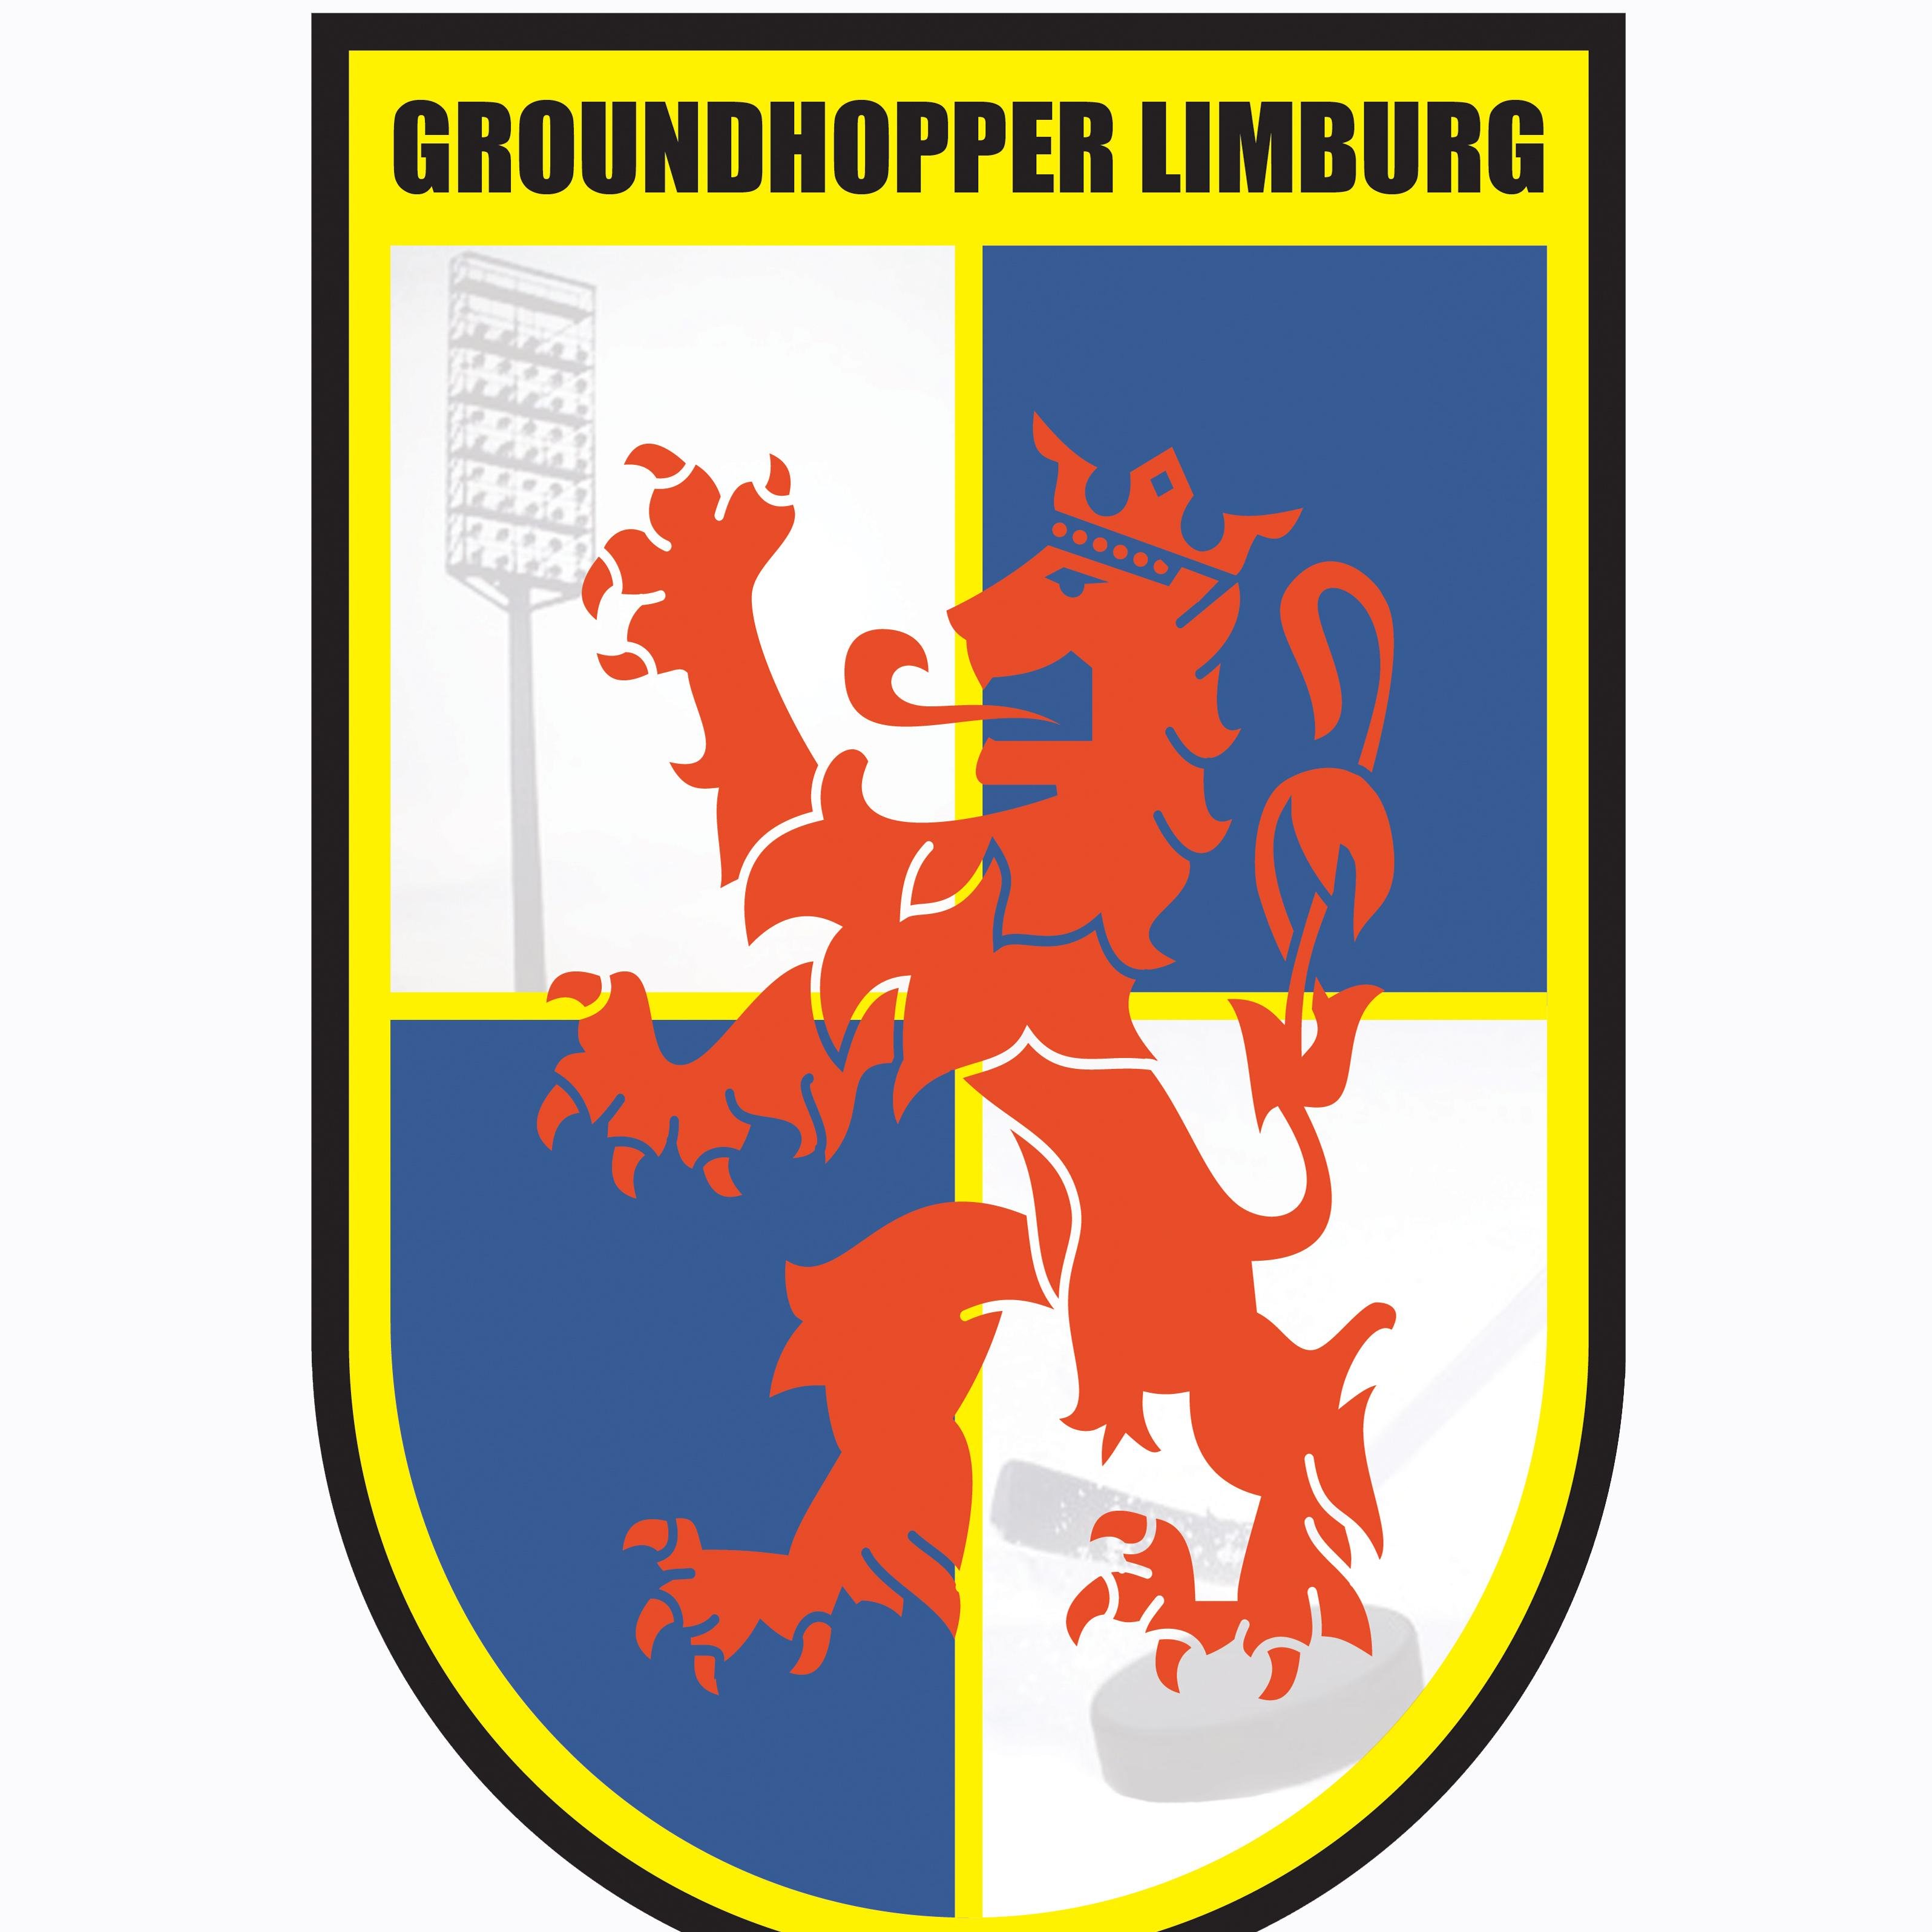 Groundhopper uit Limburg. Bezoekt vooral voetbalstadions en af en toe een ijshockeyhal. Veelal buiten wedstrijddagen